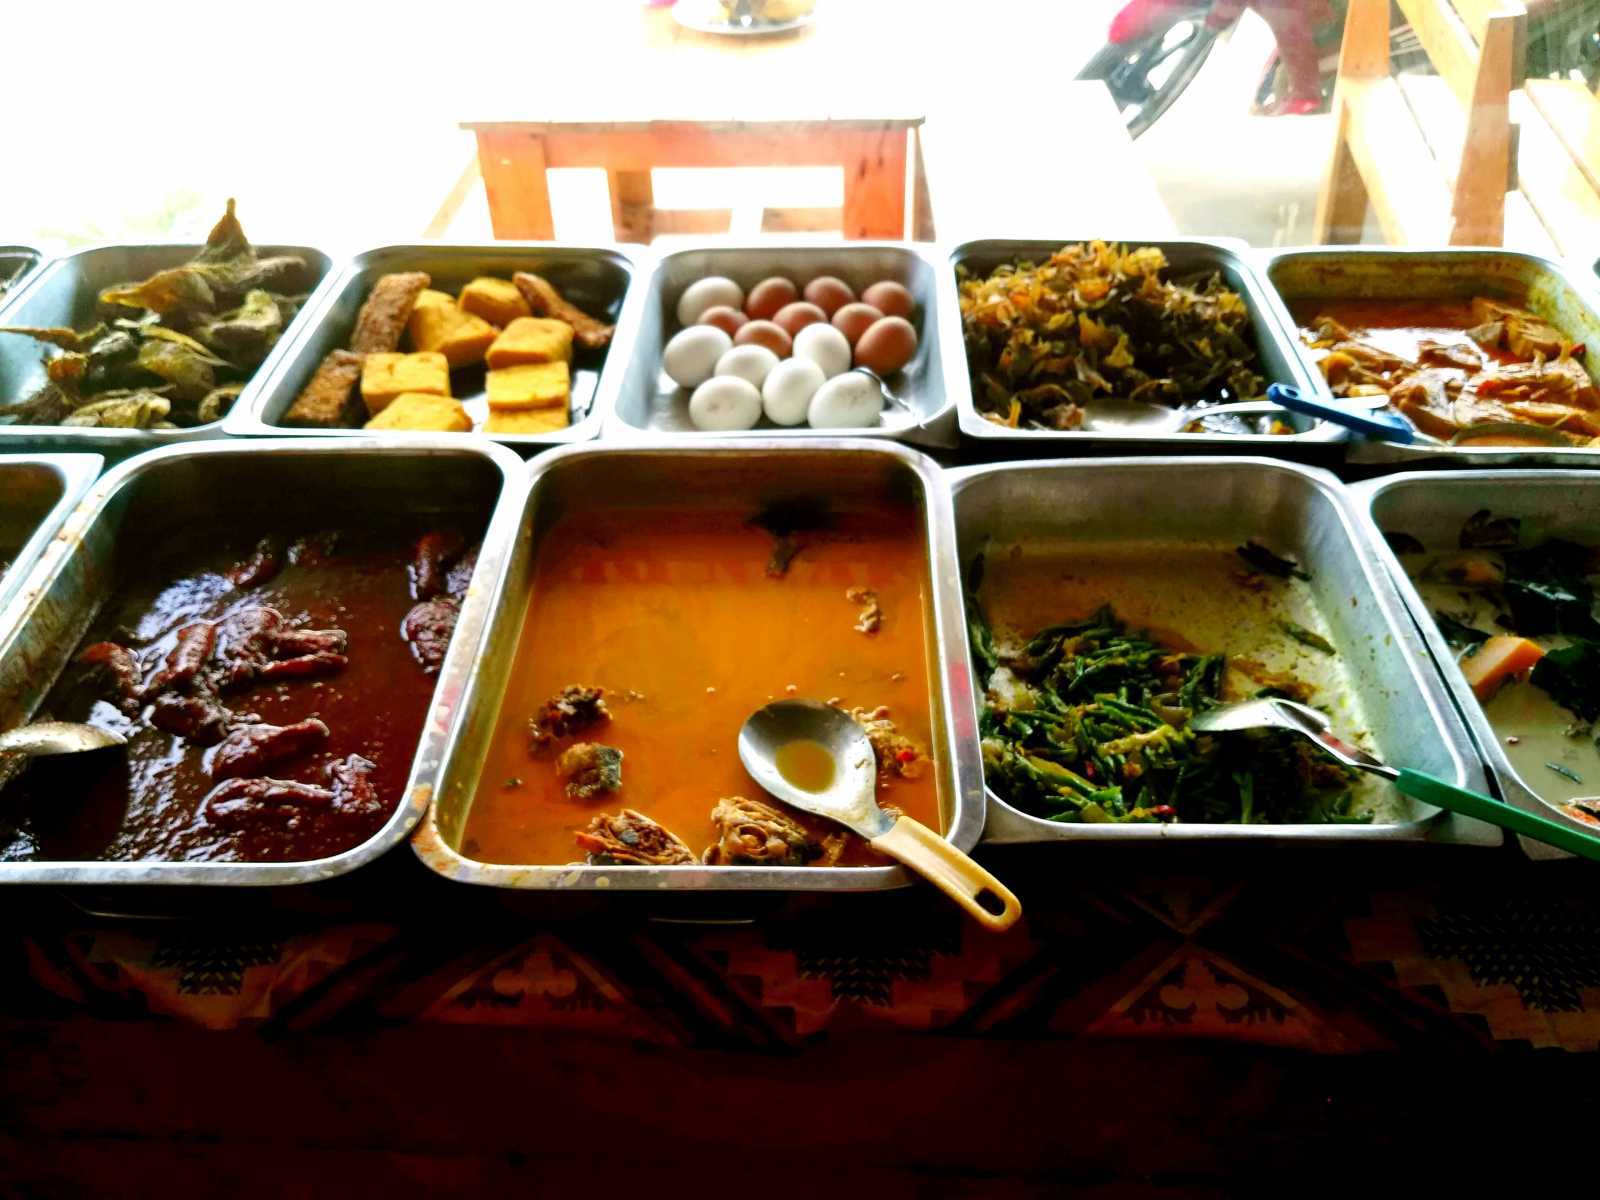 Klasický způsob podávání jídla - naber si co chceš, Langkawi, Malajsie